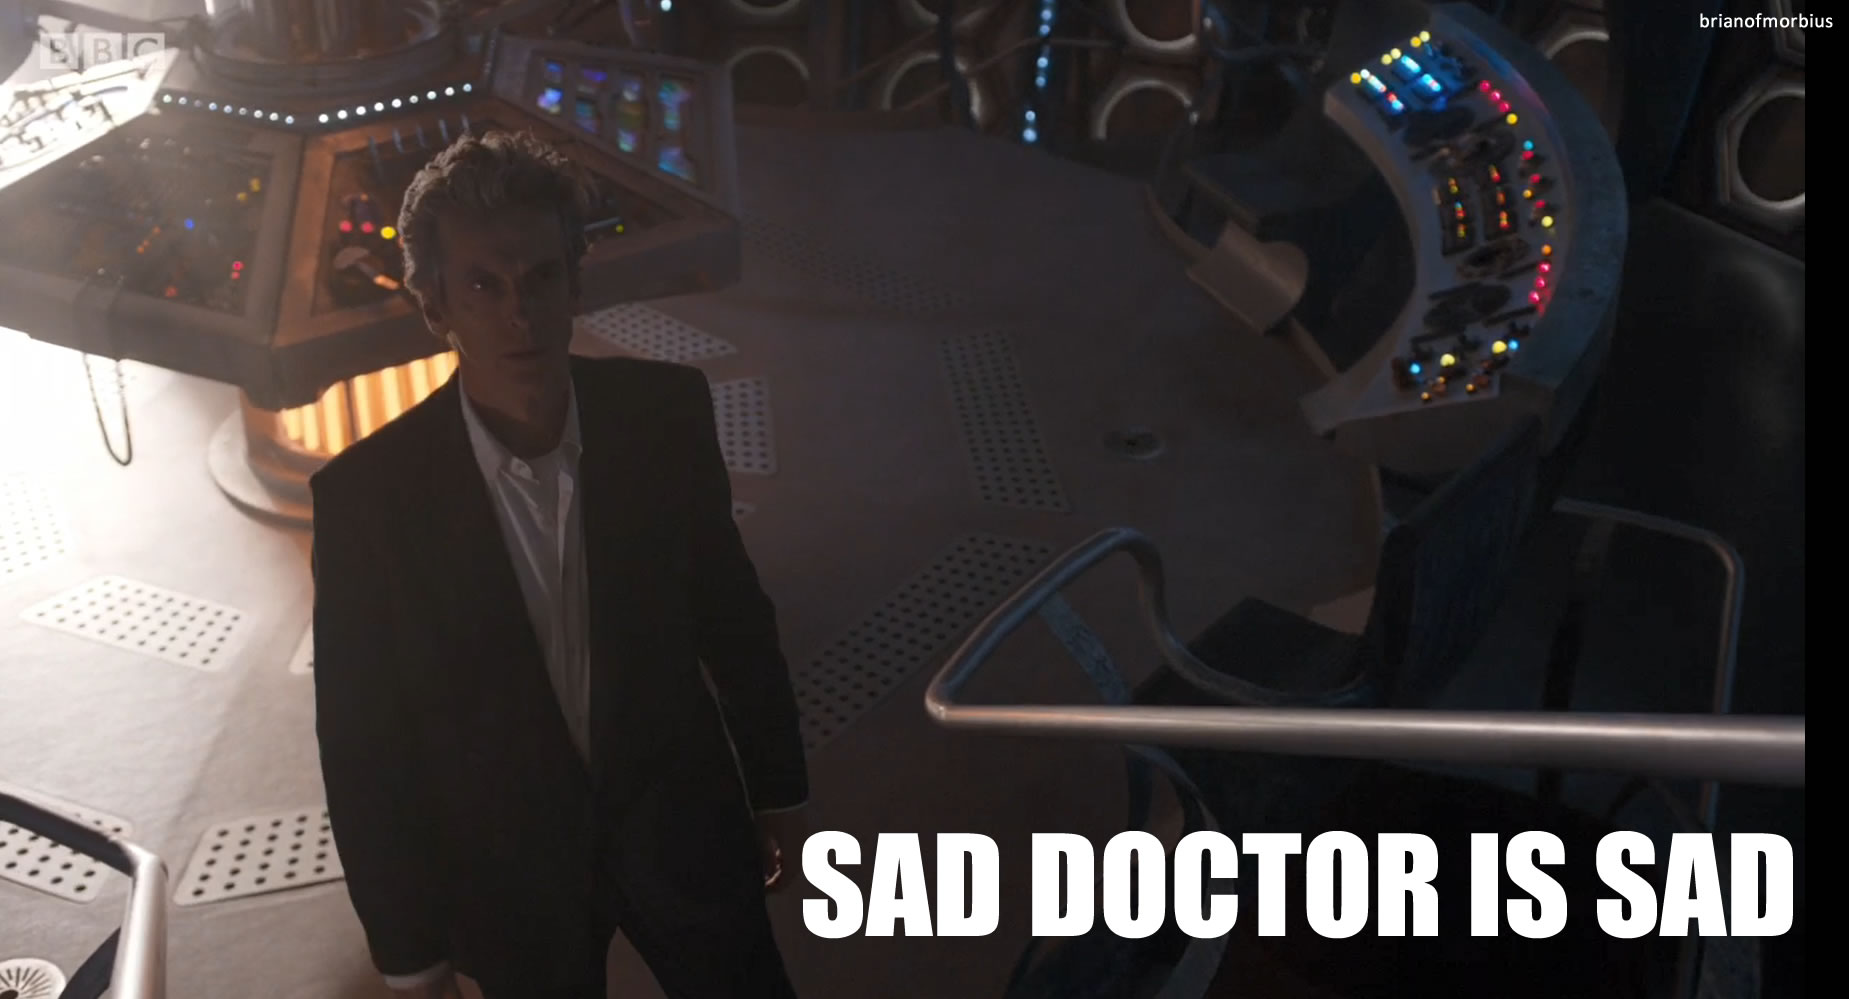 Sad_Doctor